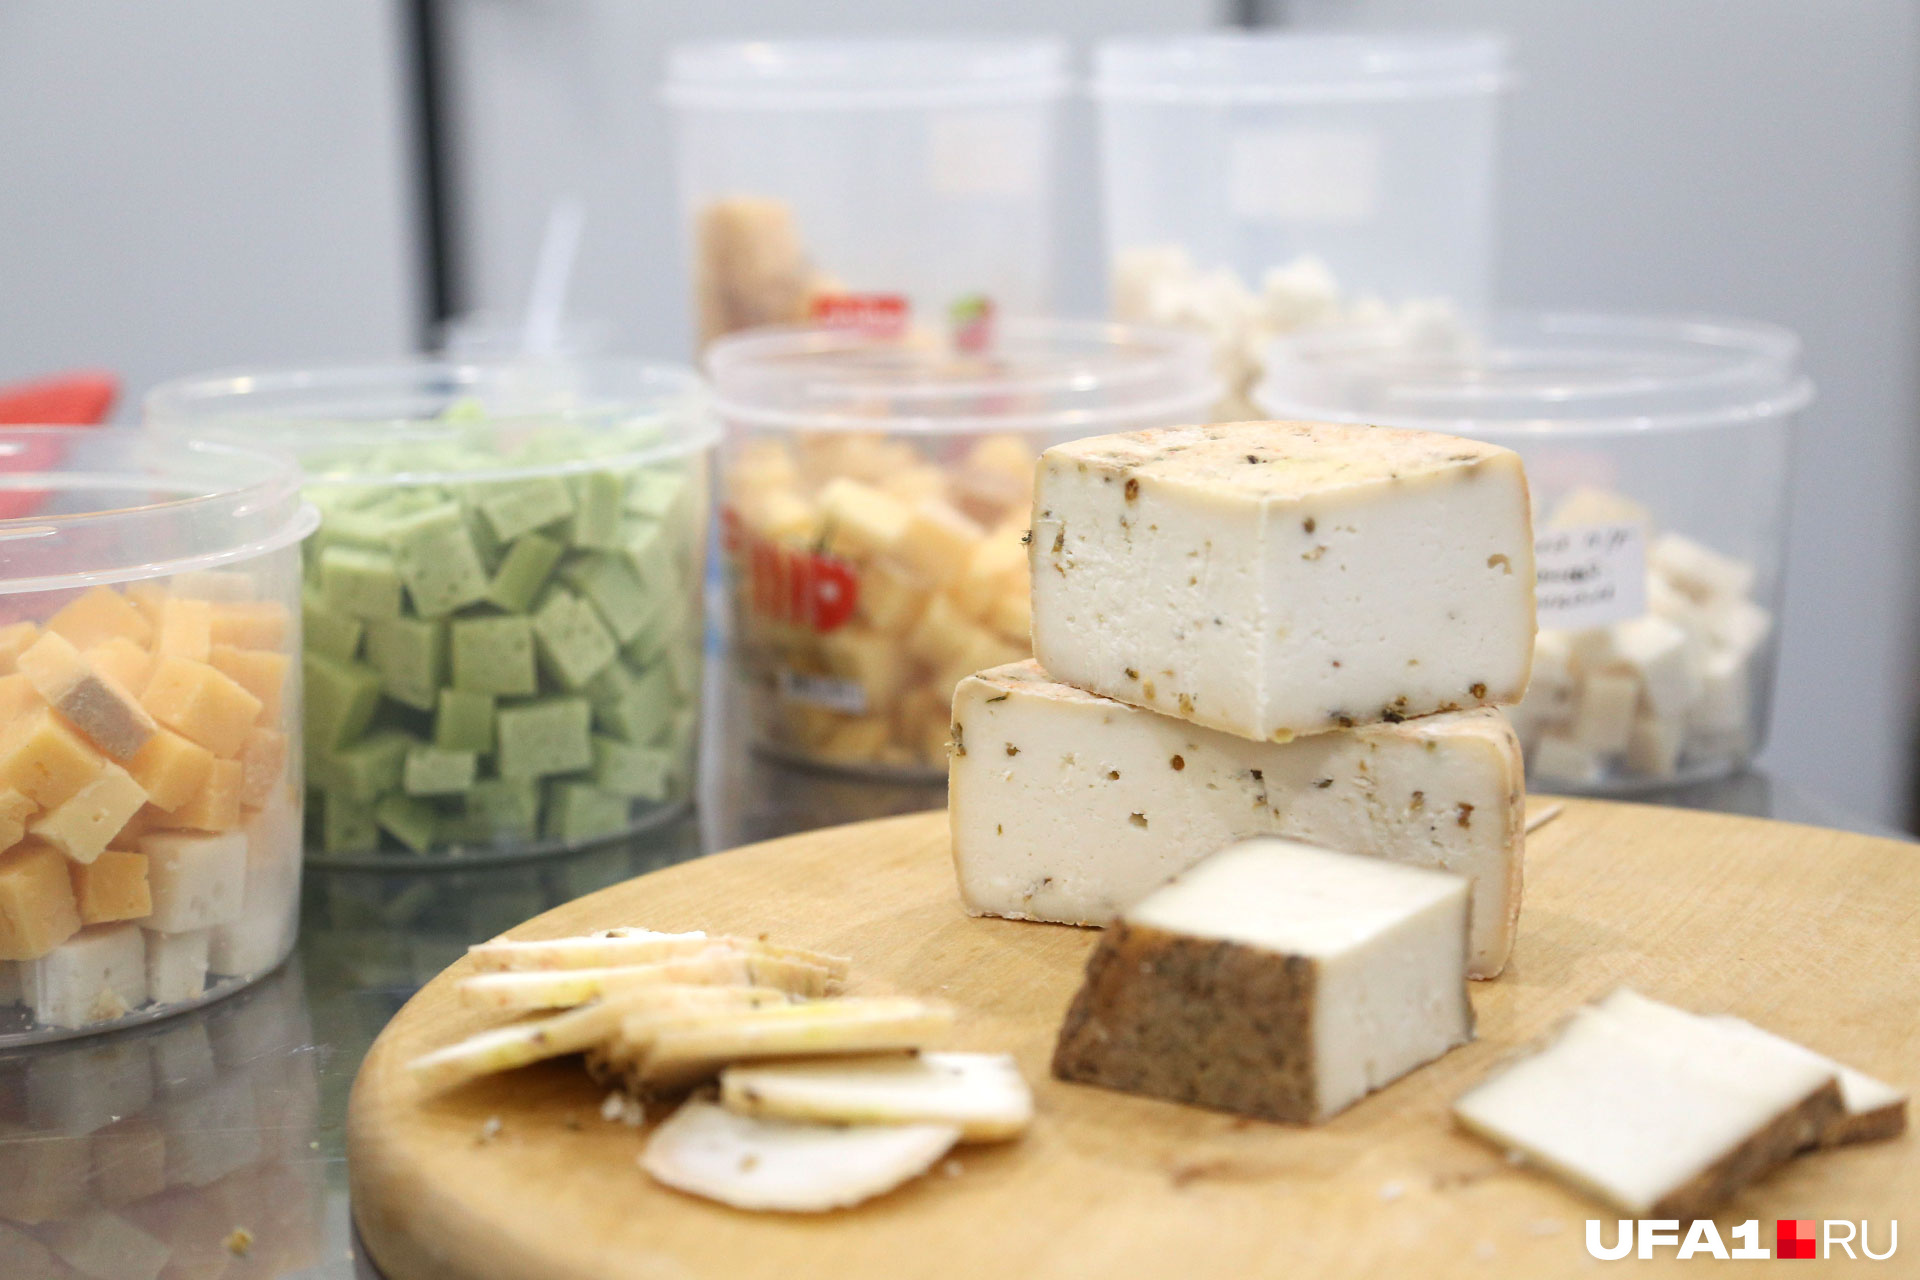 Секрет необыкновенного вкуса сыра уфимских сыроваров — проверенные технологии и немного импровизации